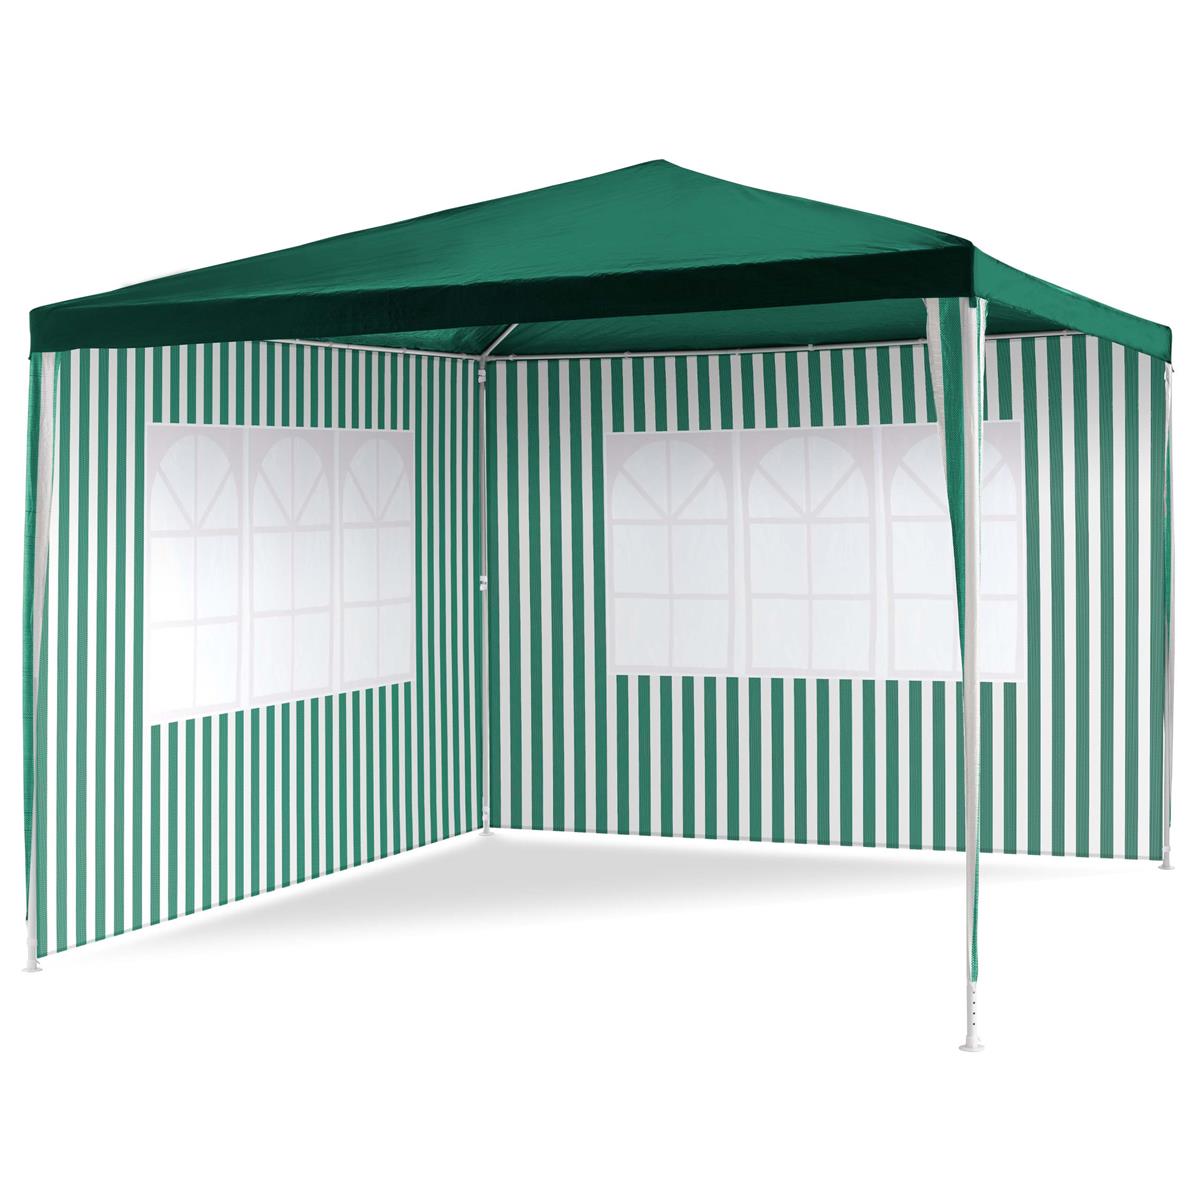 Pavillon 3x3 m in grün weiß PE Plane 2 Seitenteile Partyzelt Gartenzelt Zelt